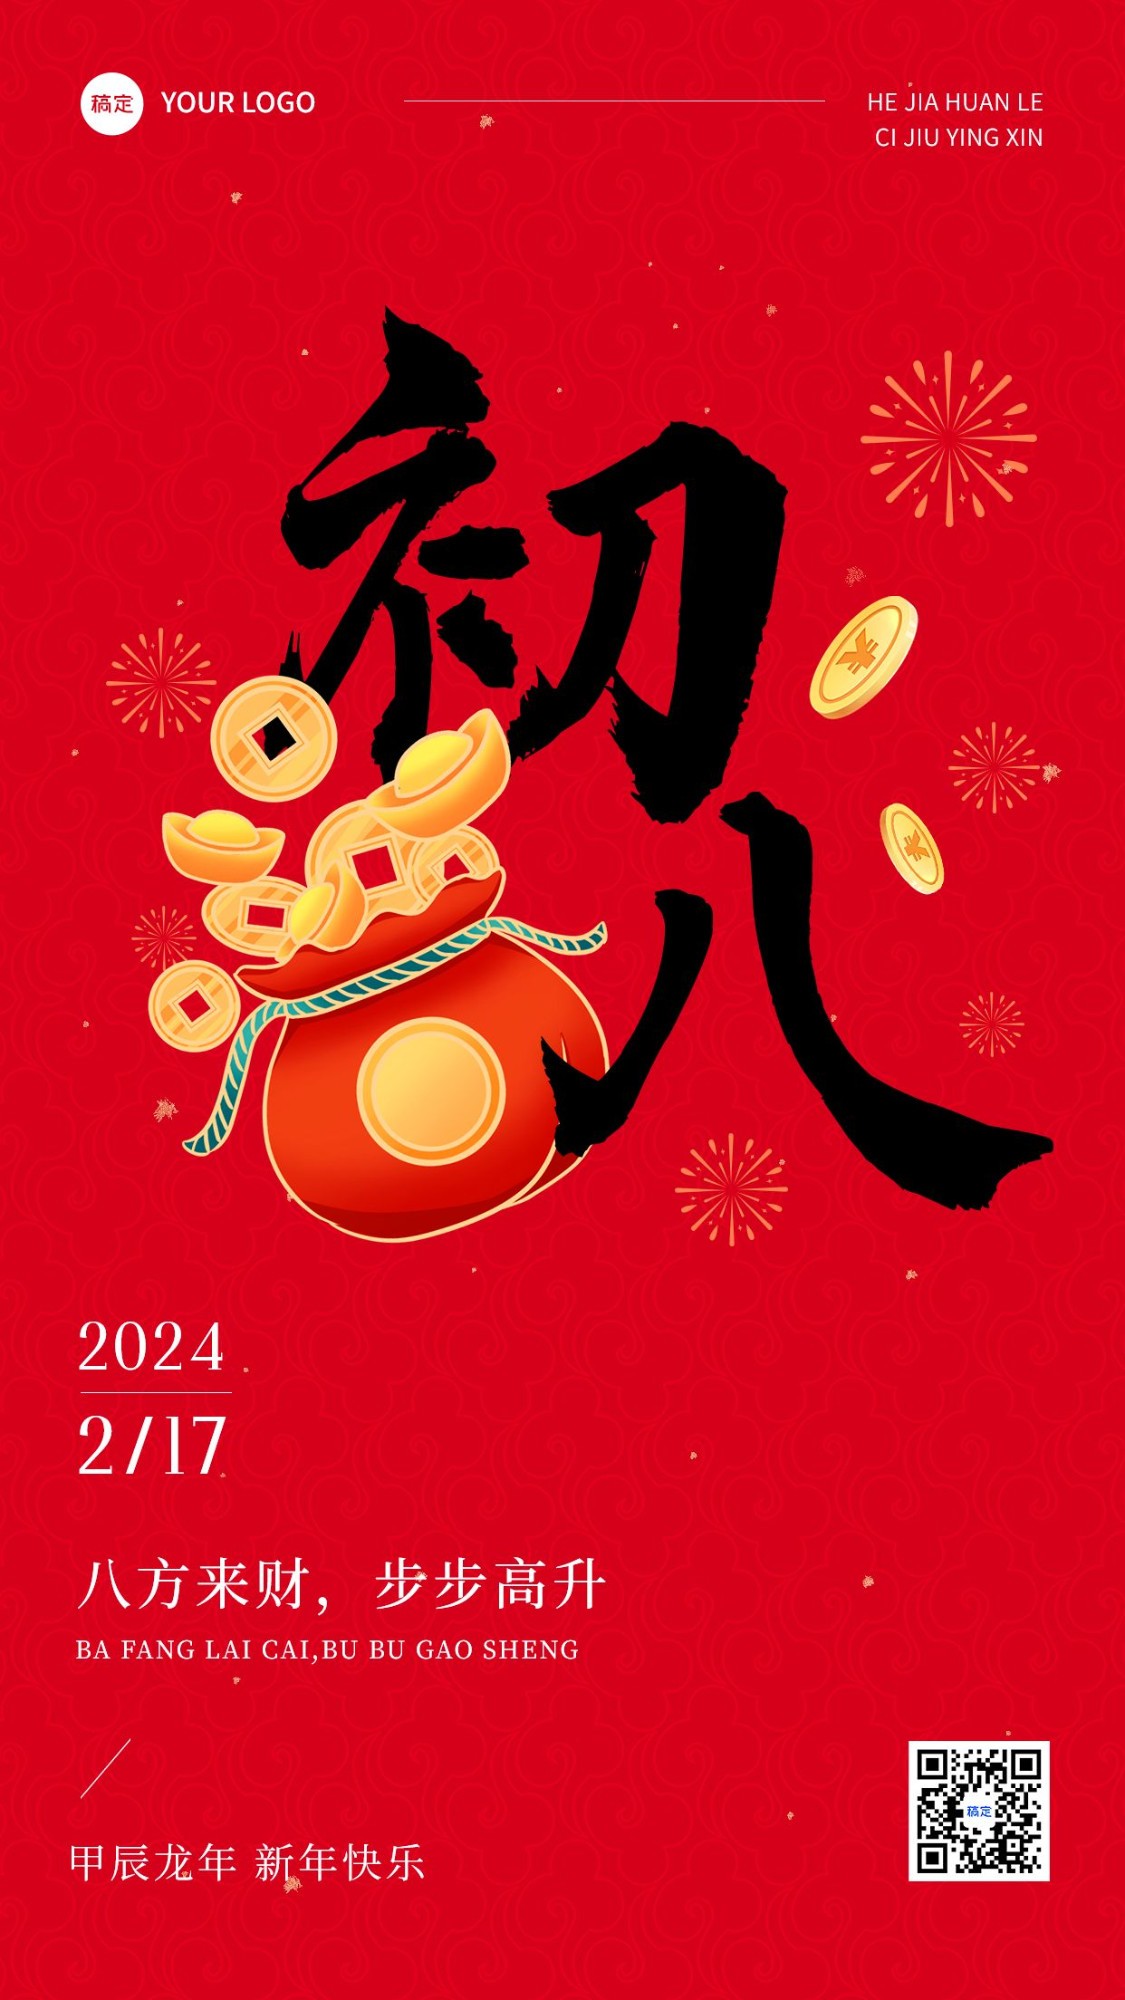 春节正月初八拜年祝福套系手机海报预览效果